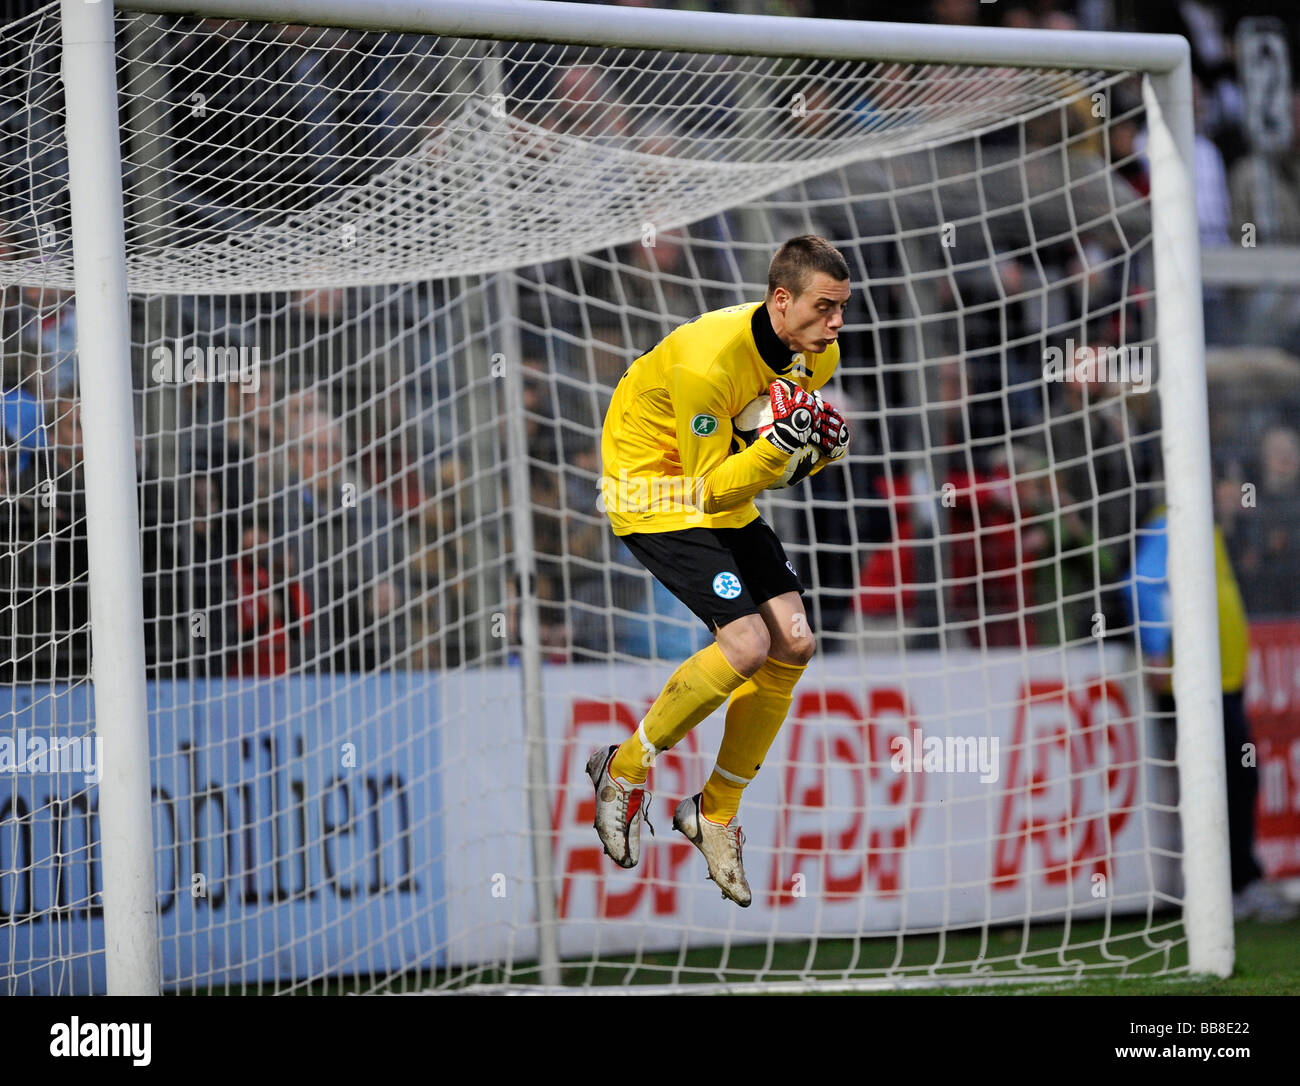 Goalkeeper Manuel Salz, Stuttgarter Kickers, catching a ball Stock Photo